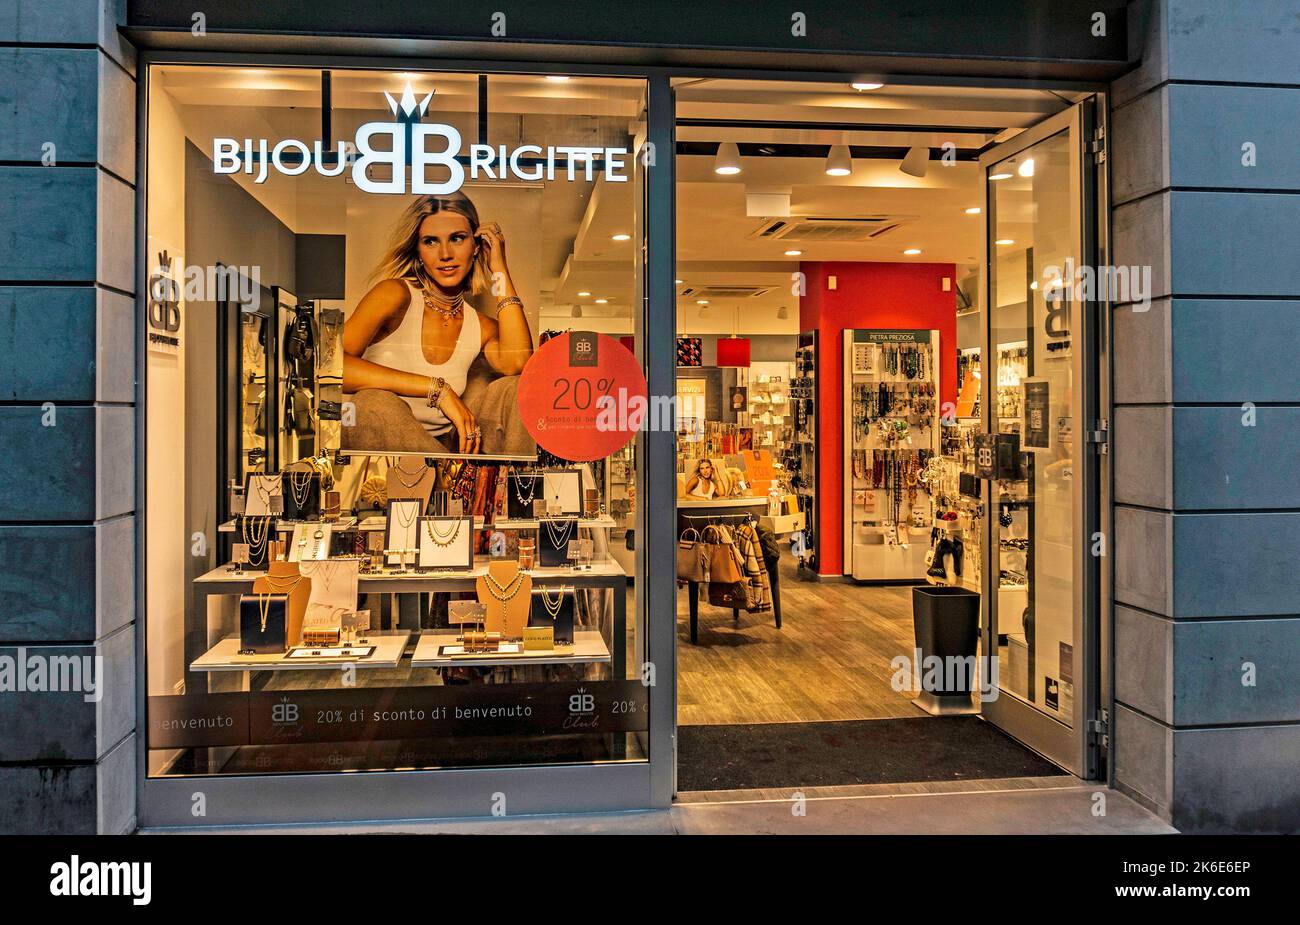 Un negozio di accessori di abbigliamento Bijou Brigette in Via Roma, Lecco, Italia. Foto Stock